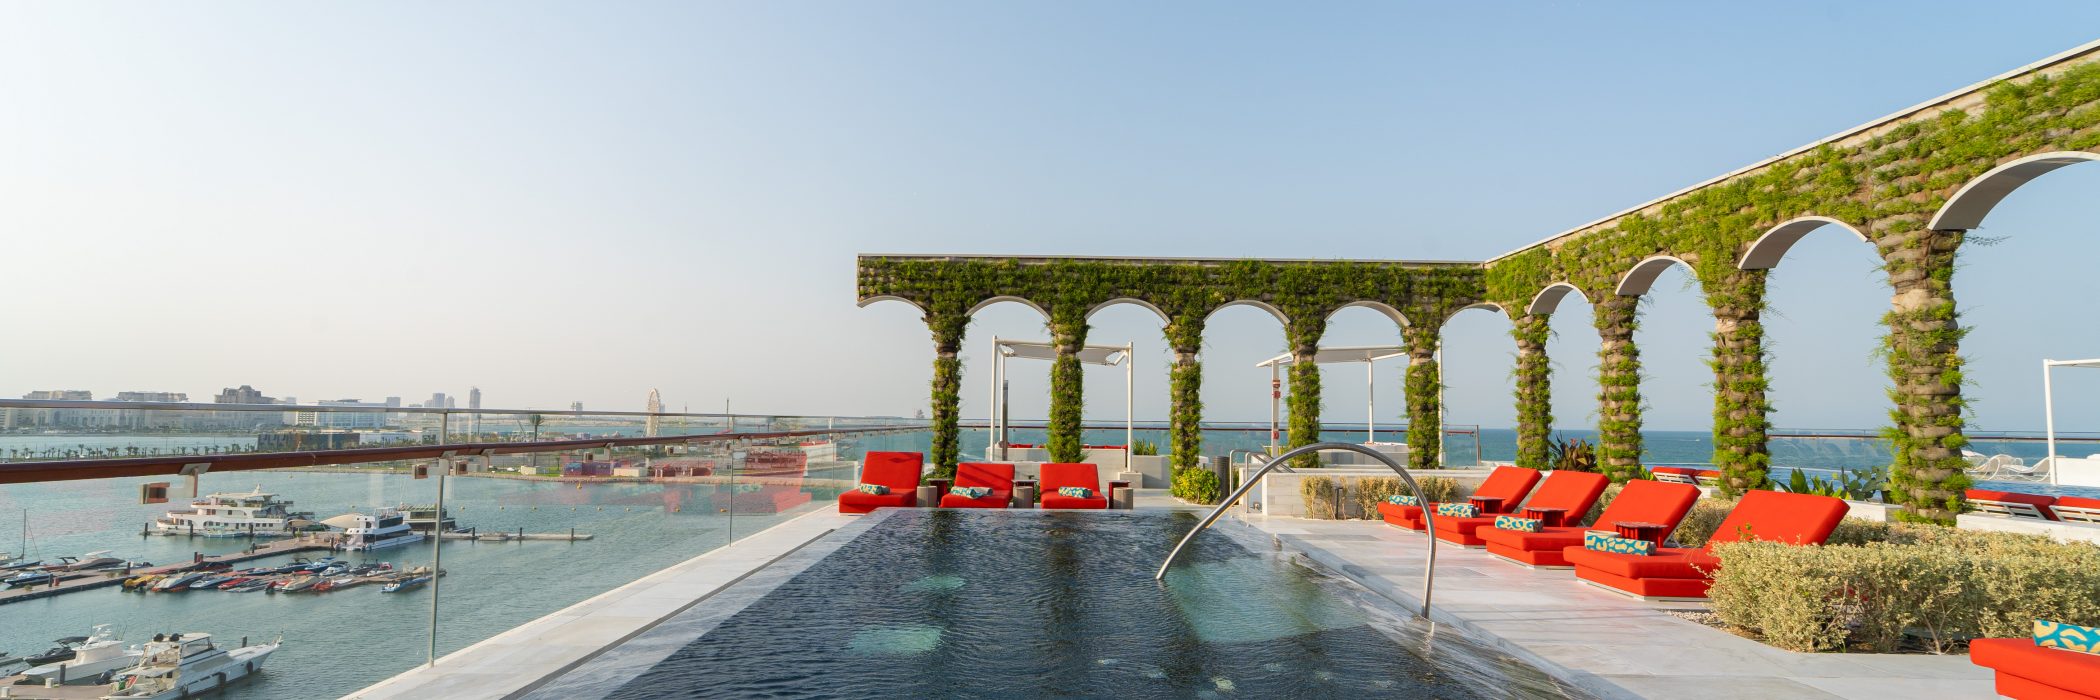 Raffles Doha - Aqua Urban Deck – Pool Pass & Aqualuxe Cabana